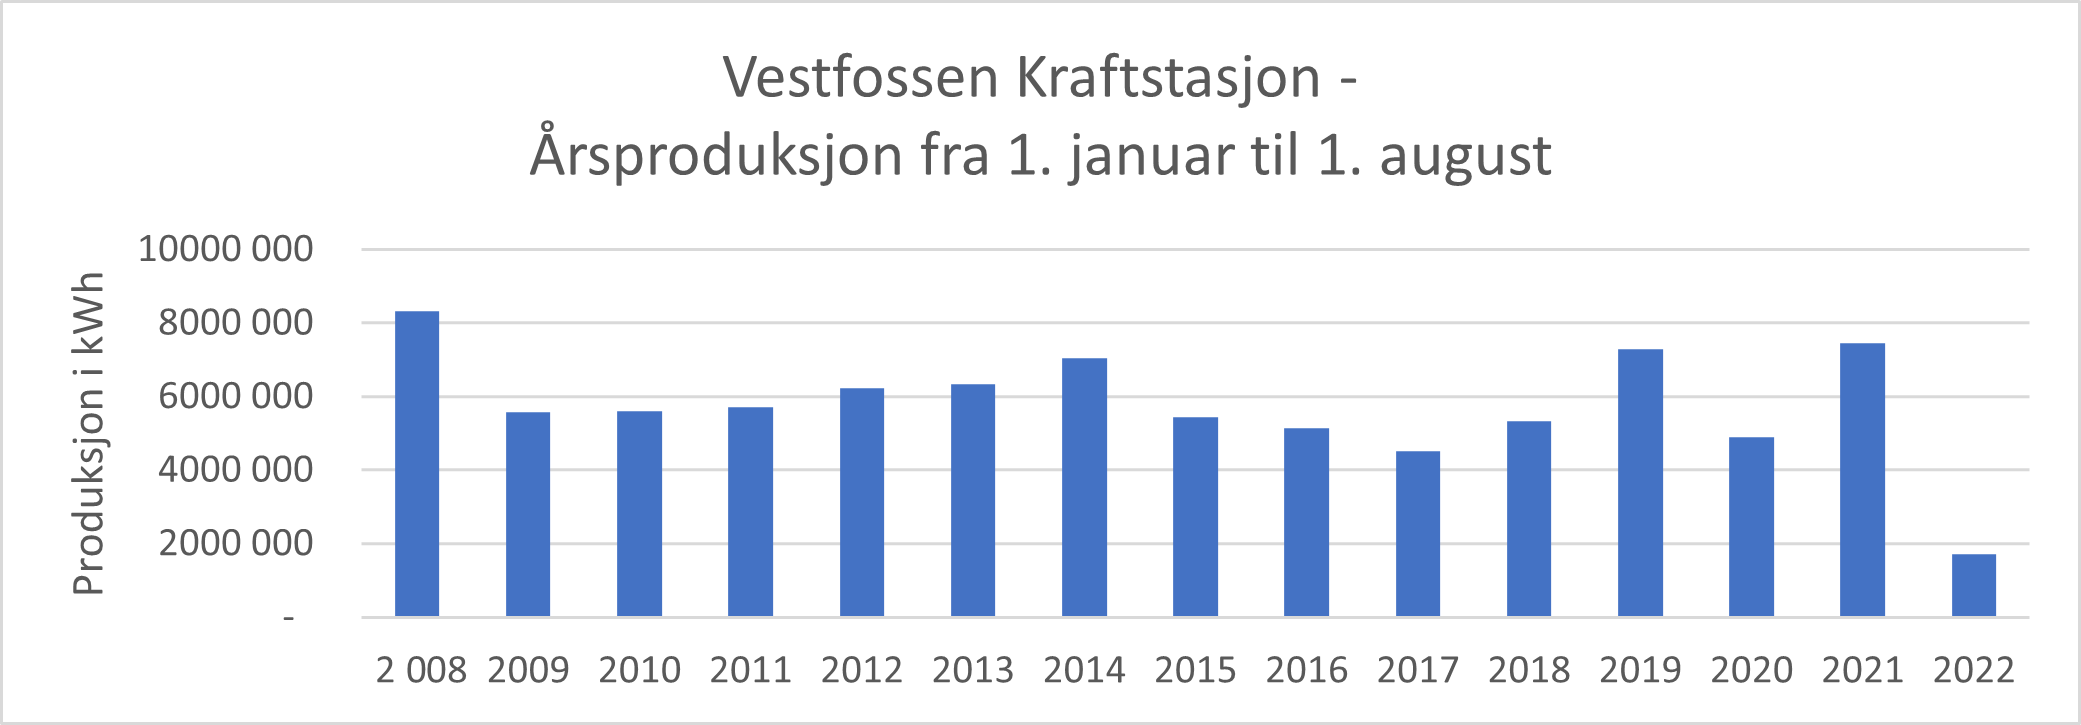 Fig. Vestfossen Kraftstasjon - Årsproduksjon fra 1. januar til 1. august